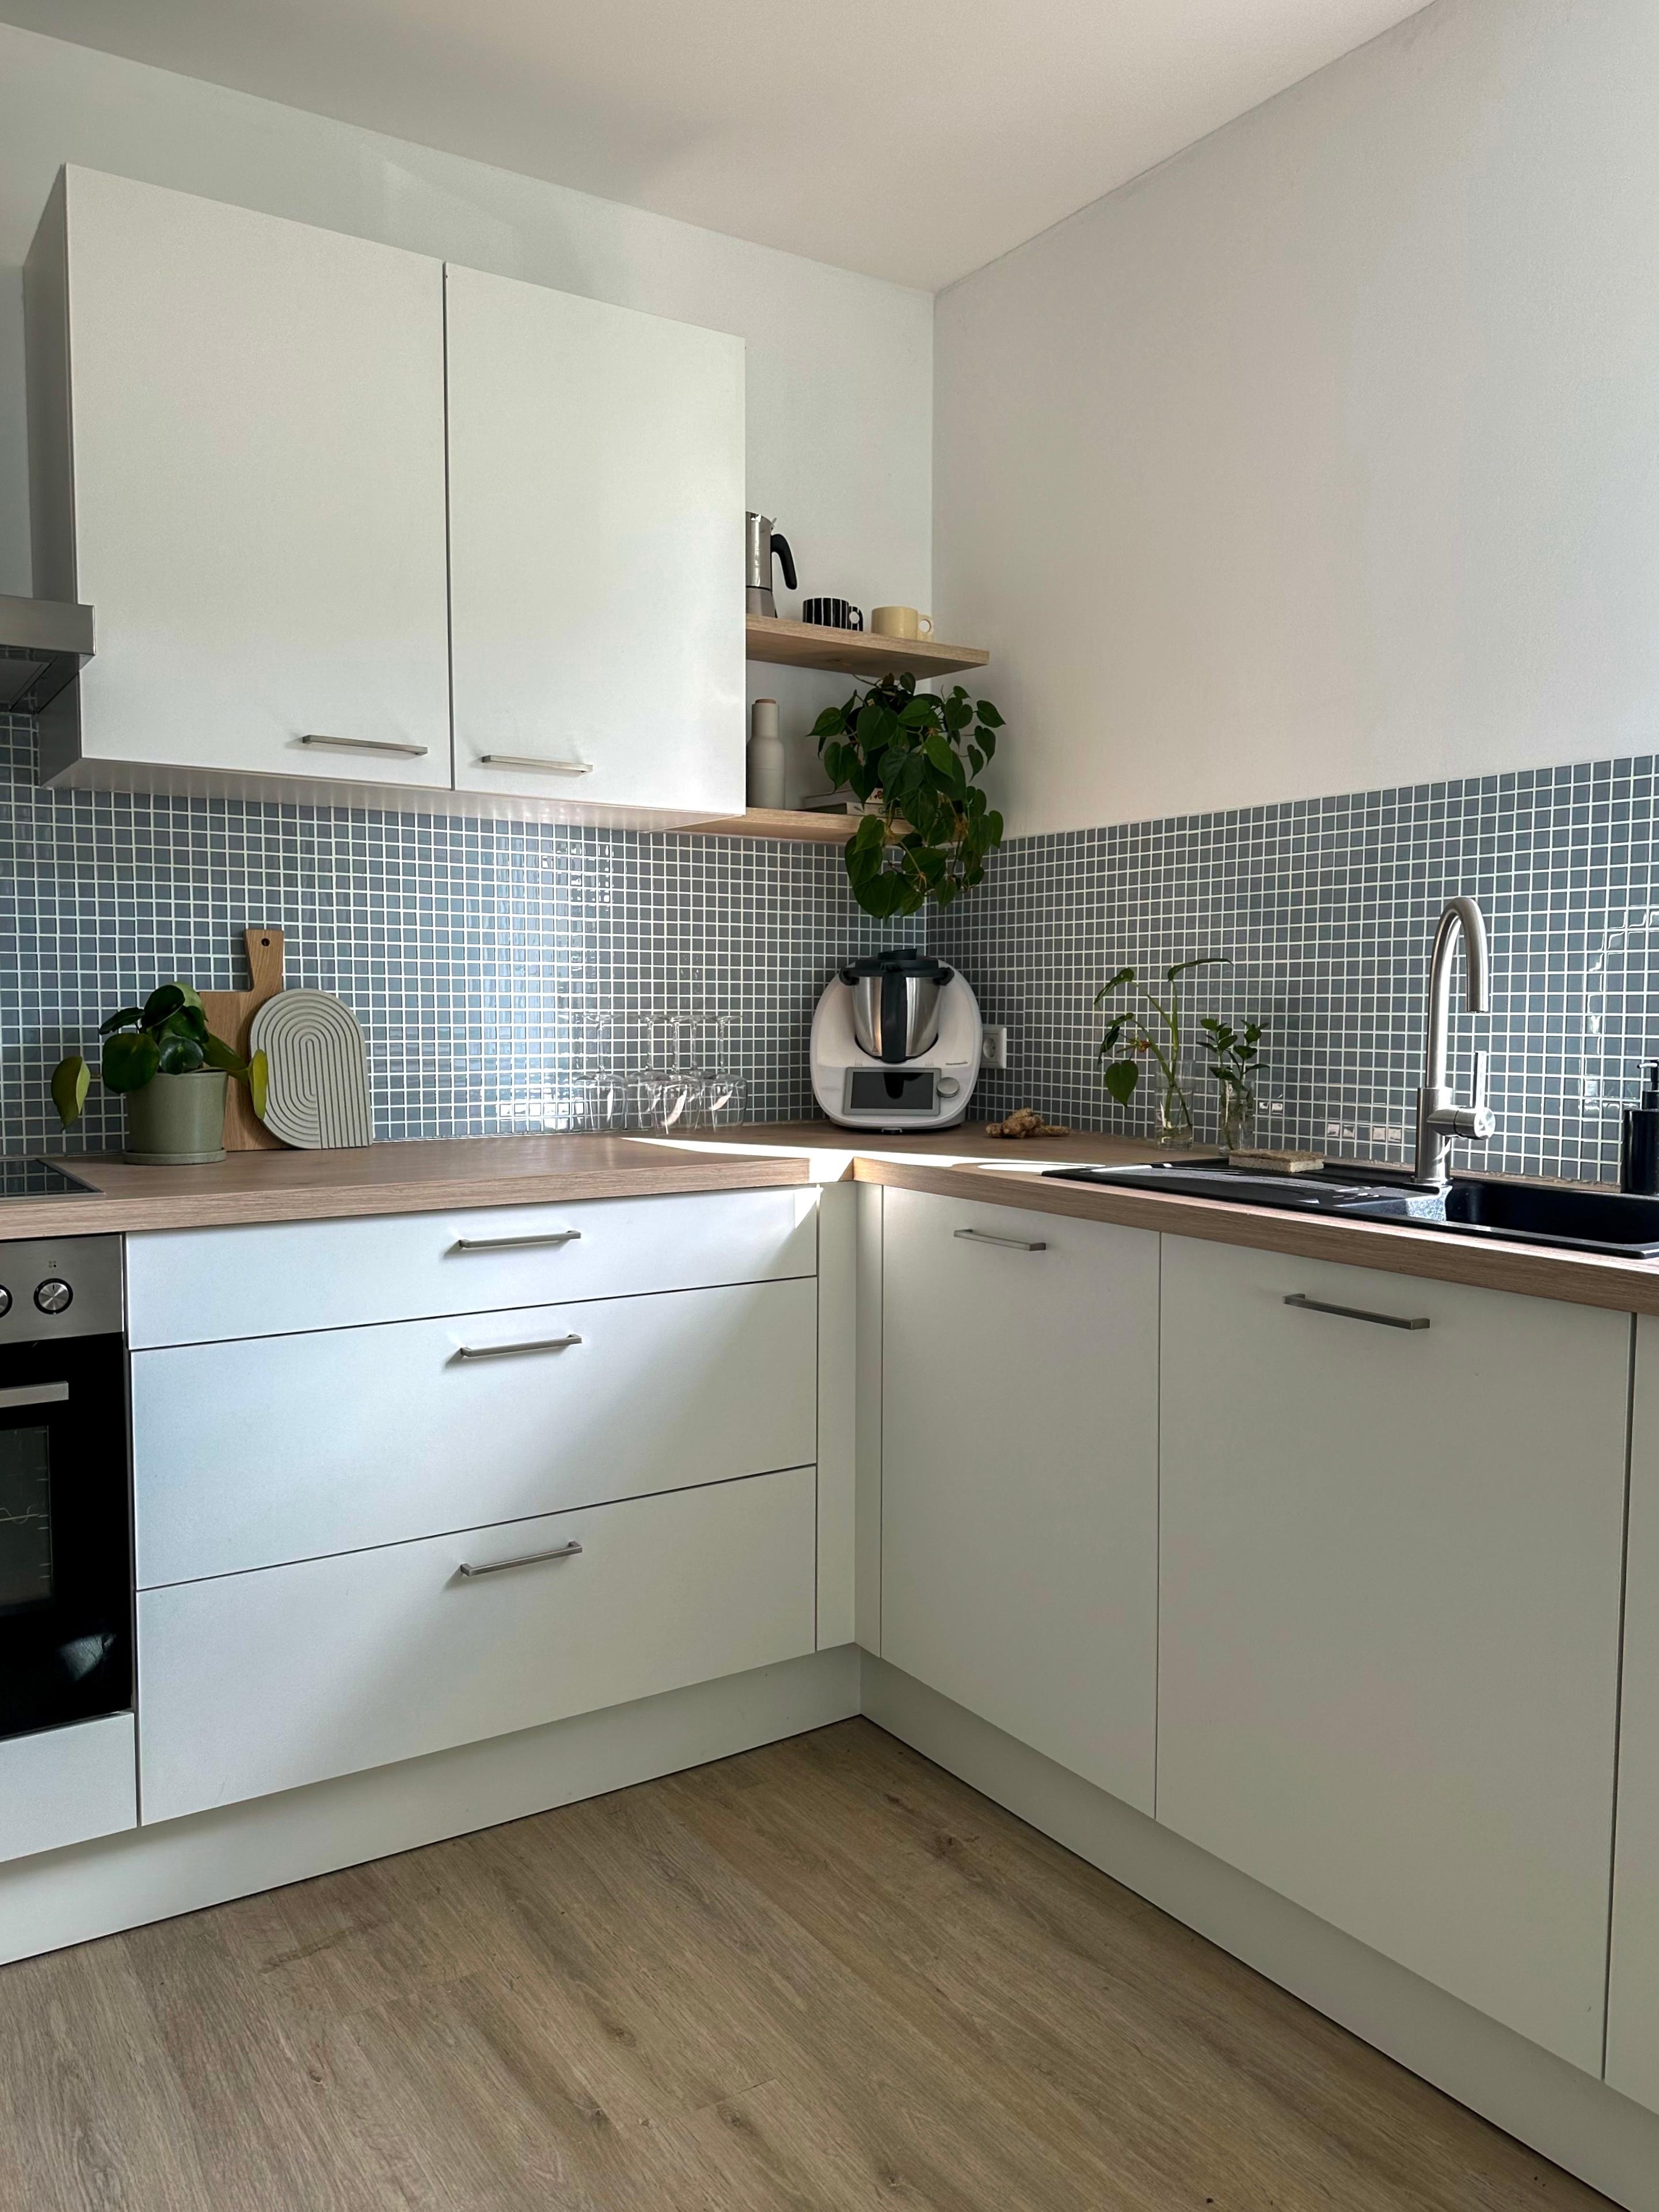 #küchenideen #weißeküche #kitchendesign #küche #küchendeko #dekoideen #pflanzenliebe #küchenbretter